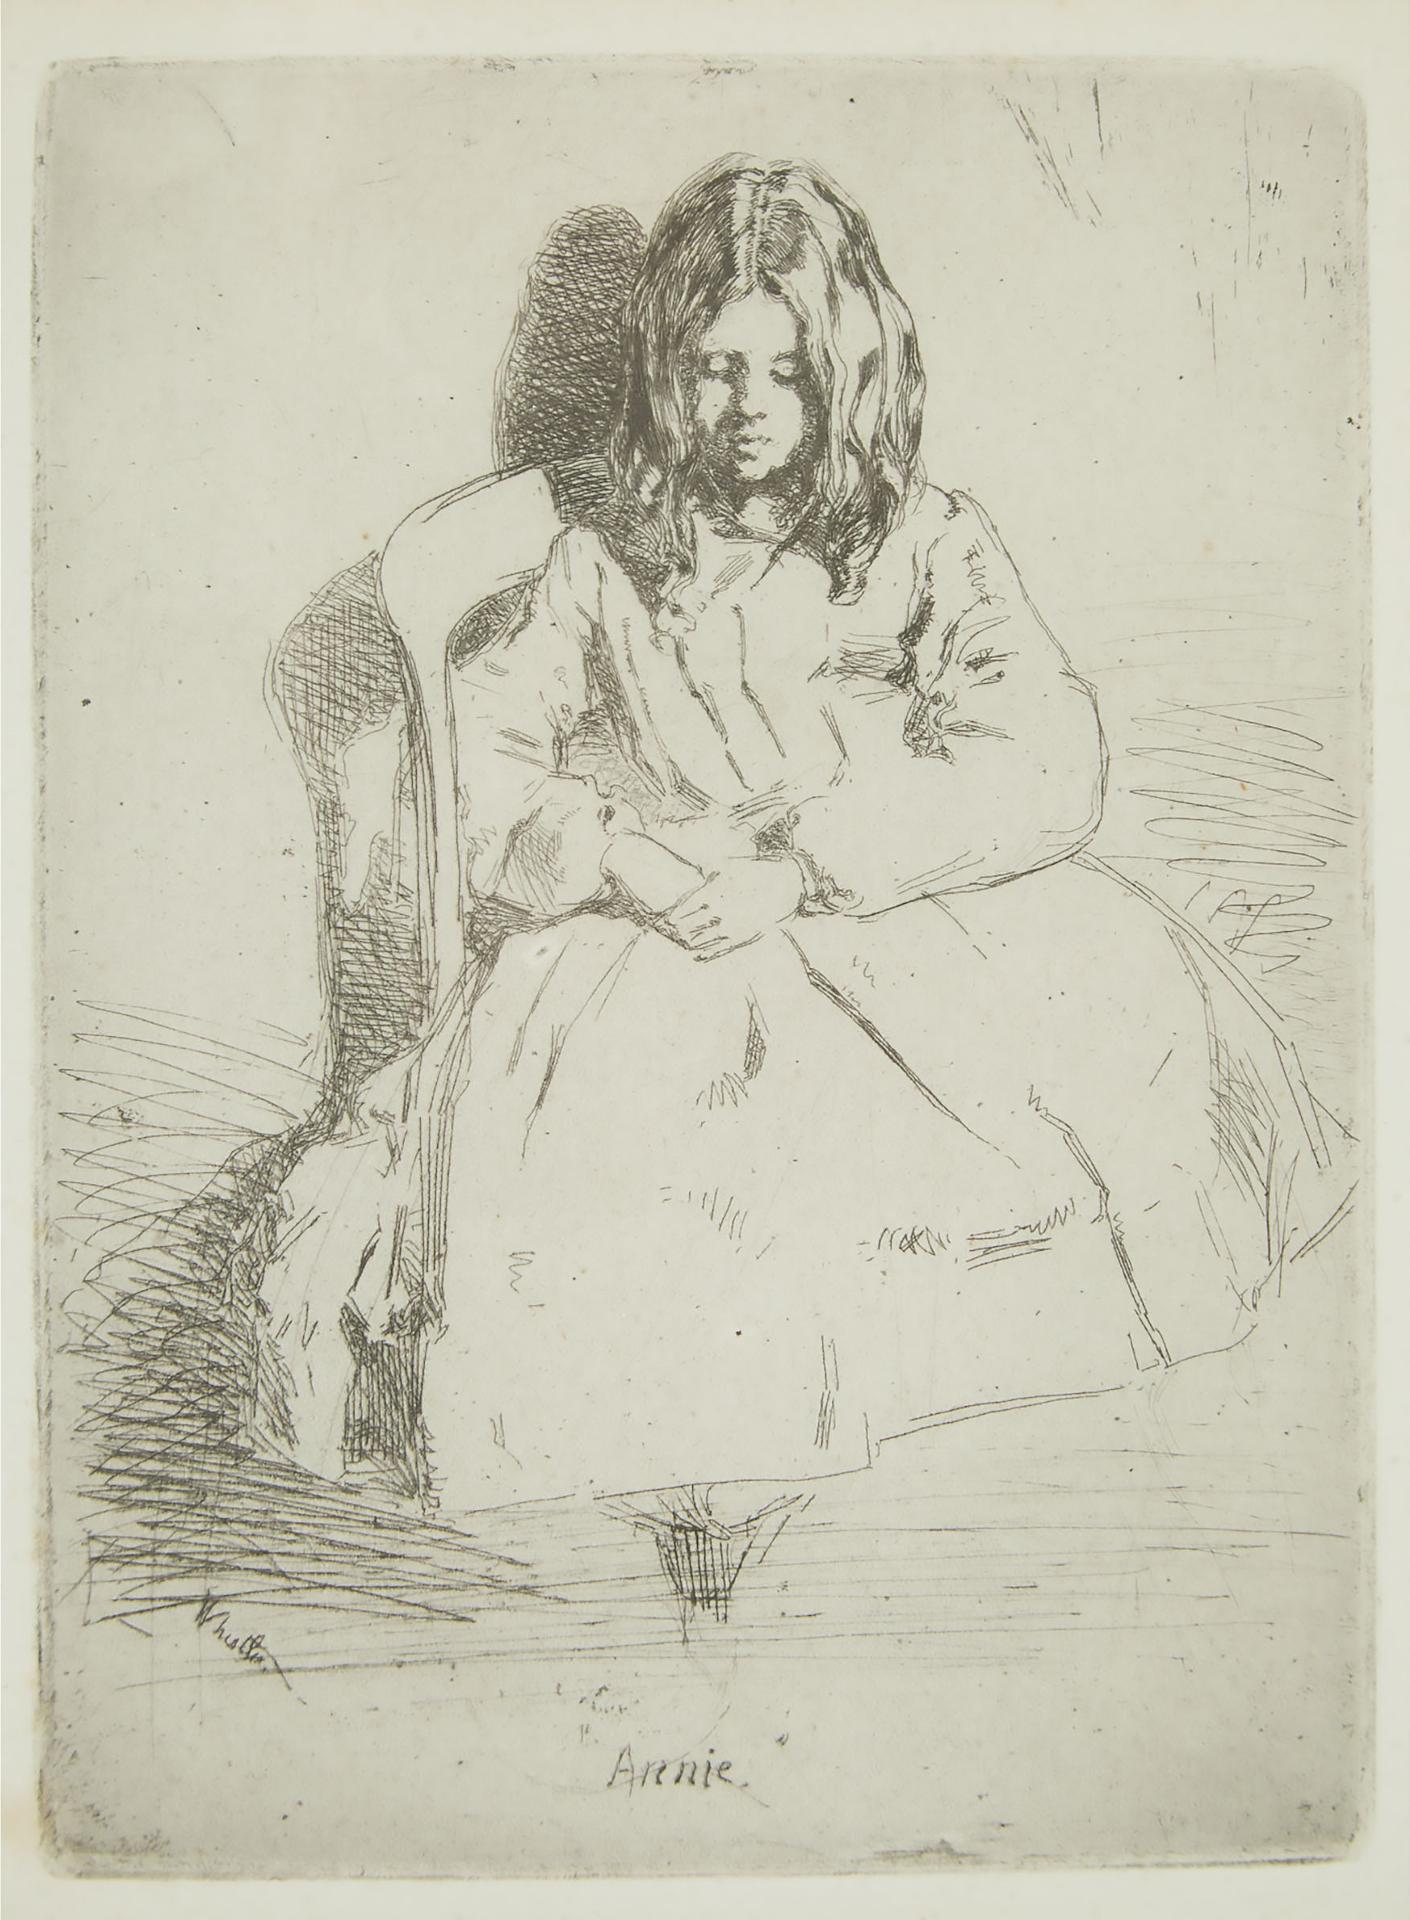 James Abbott McNeill Whistler (1834-1903) - Annie, Seated, Circa 1858-1859  [kennedy, 30; Glasgow, 32]